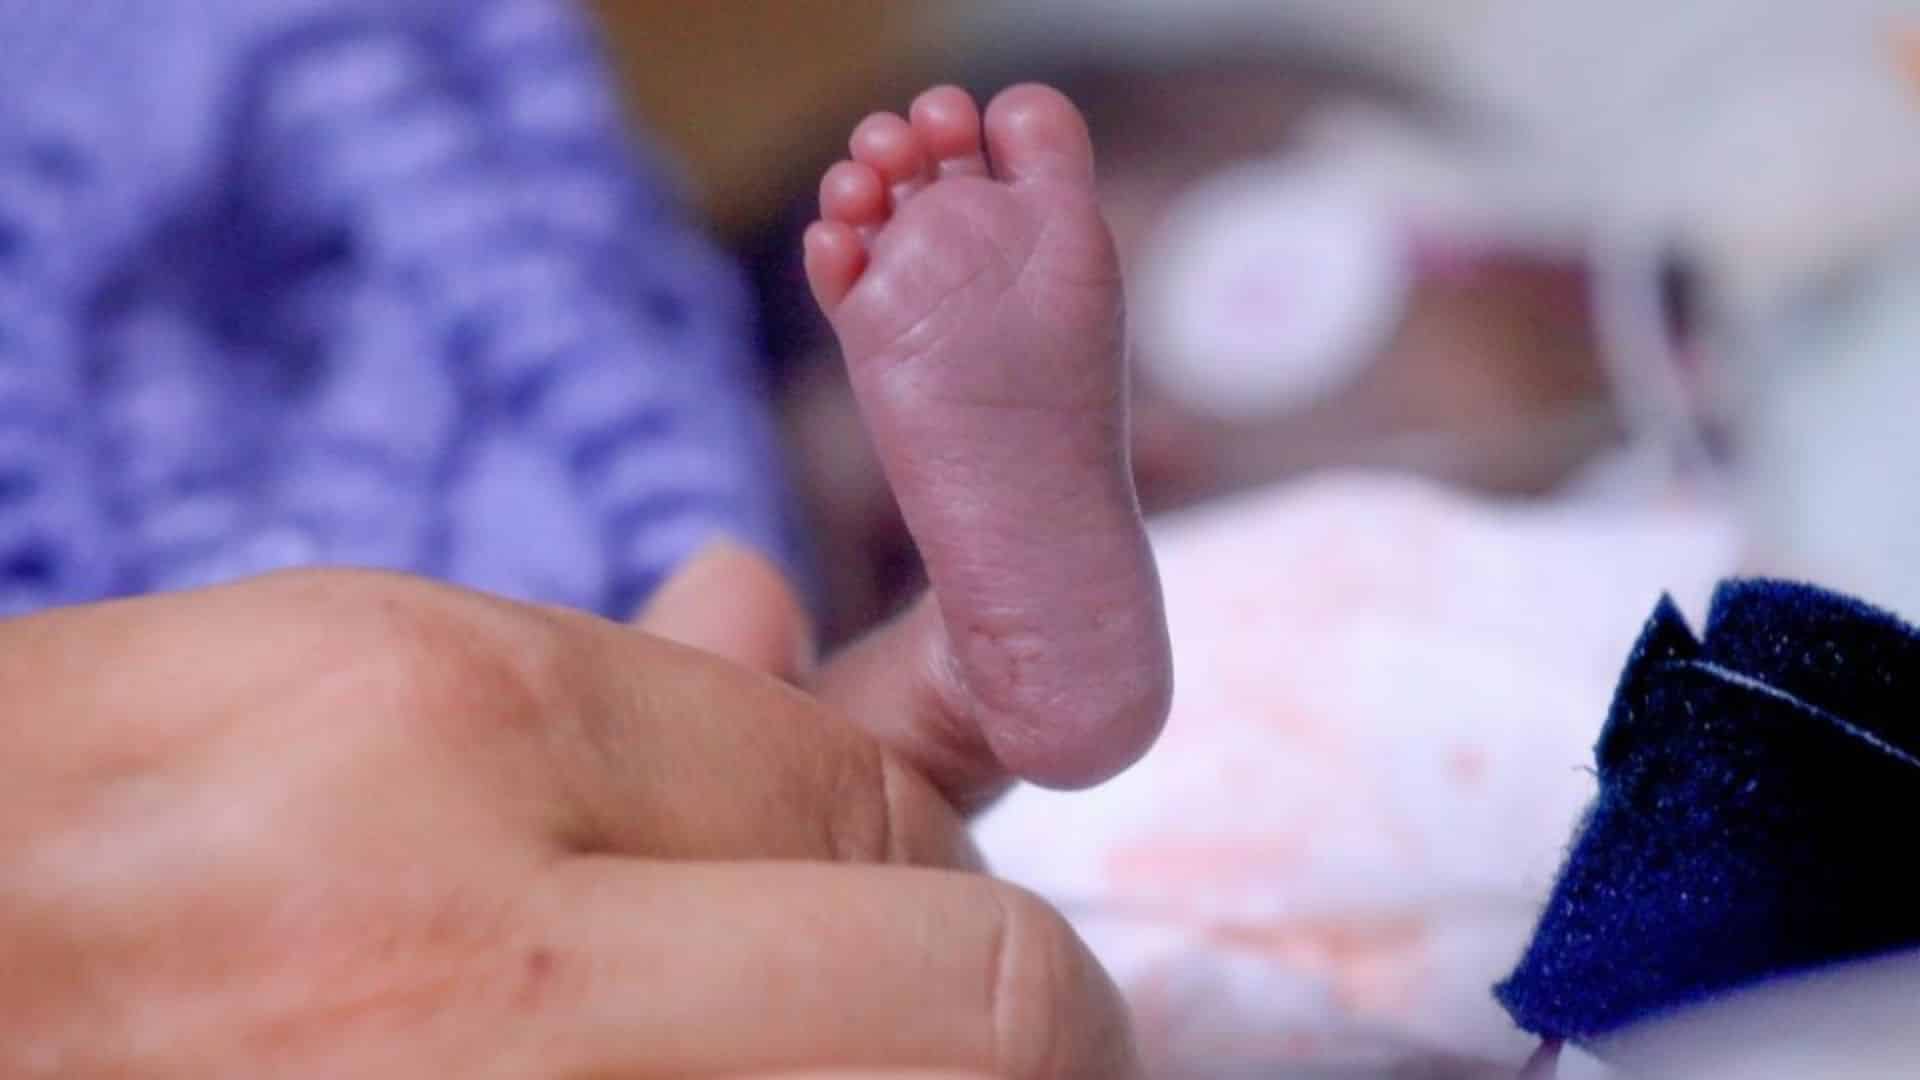 Justiça restaura resolução do CFM que proibe assistolia fetal em ABORTO moraes stf.